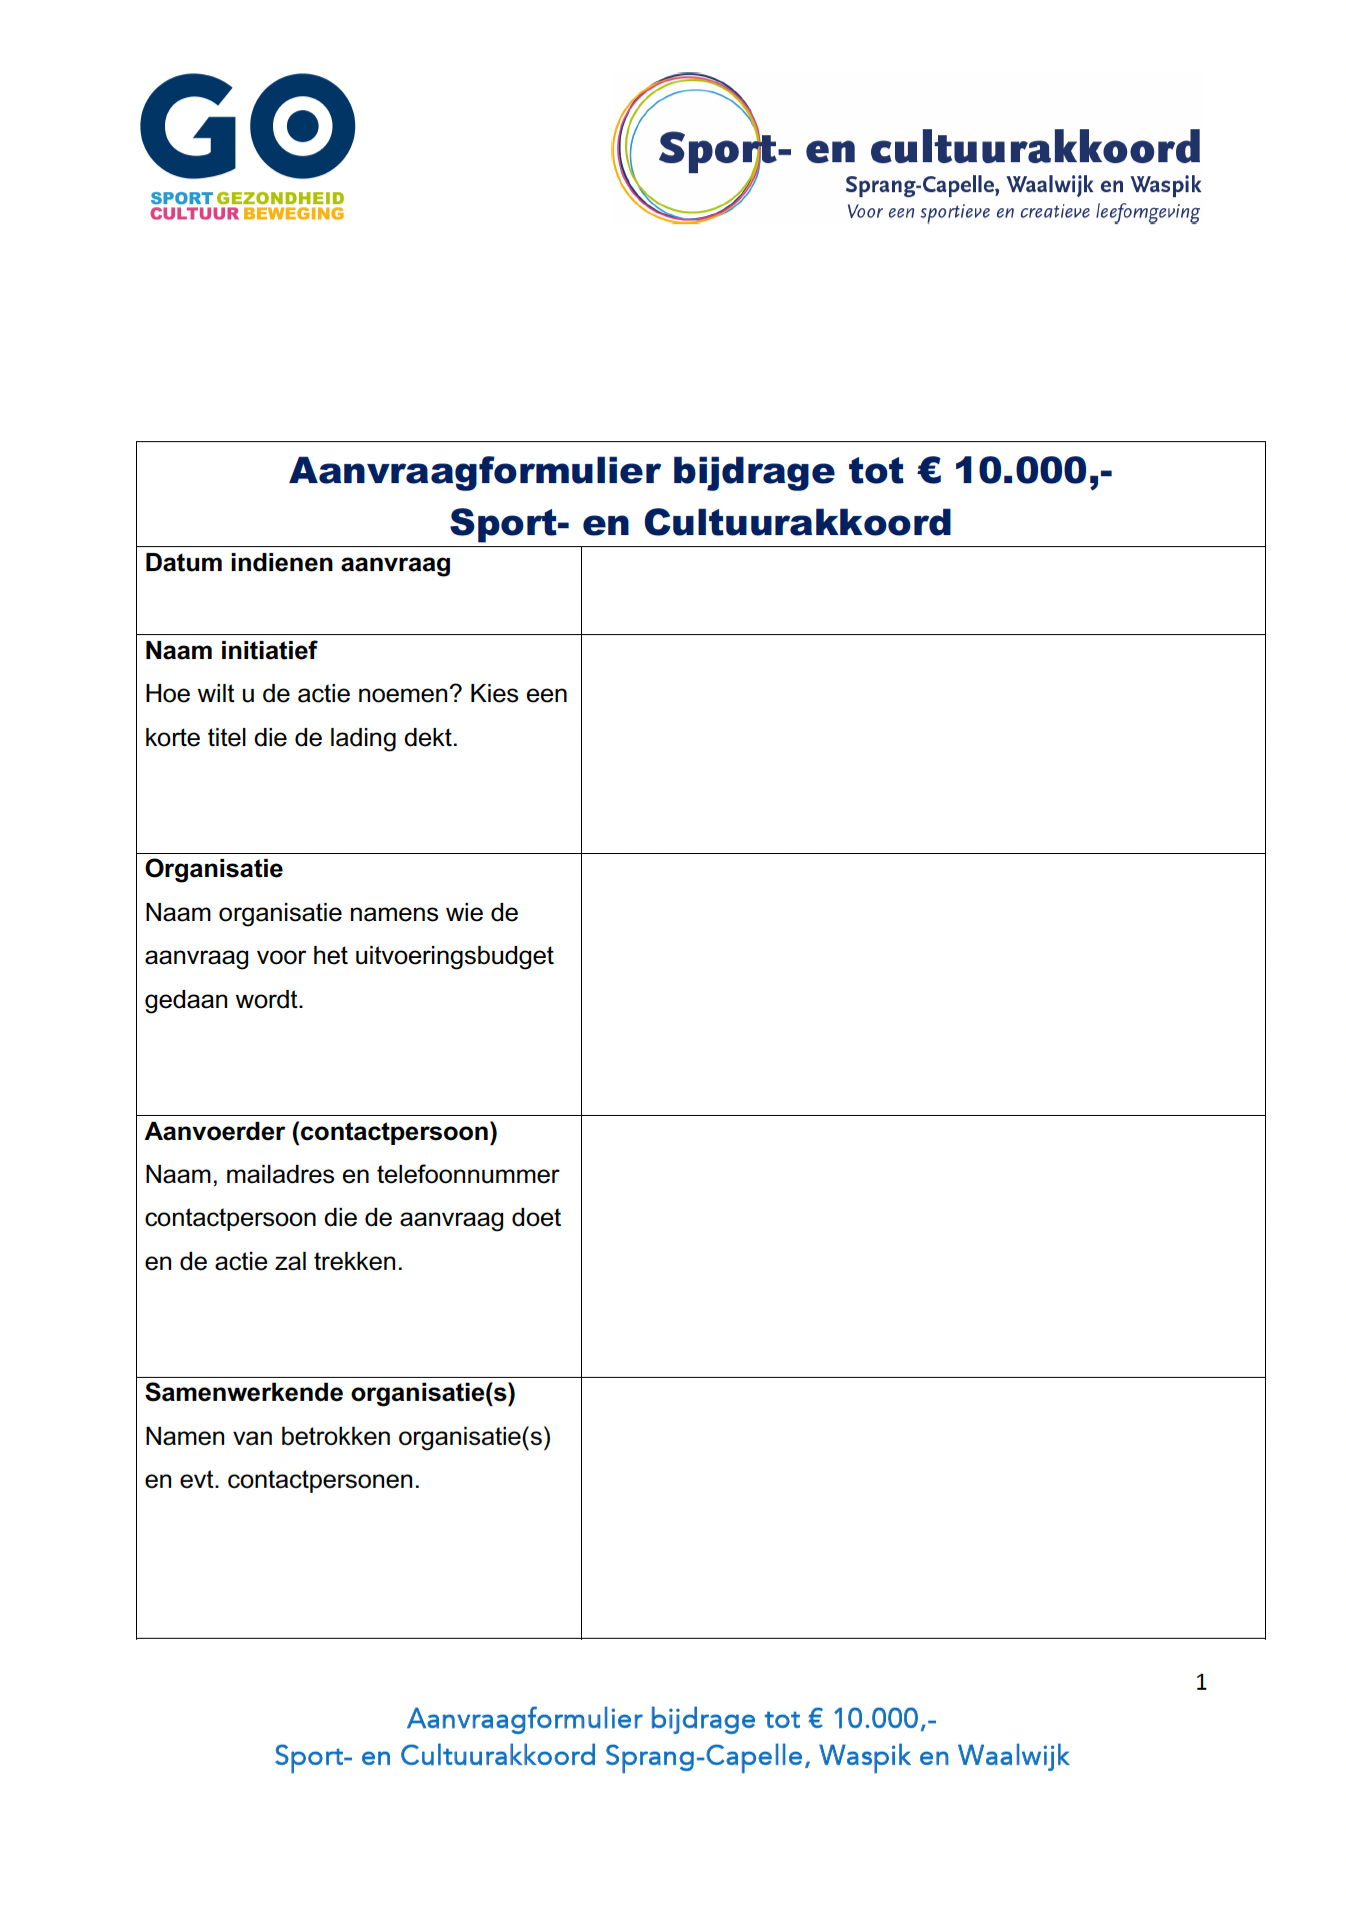 Aanvraagformulier tot 10.000 euro uit Waalwijks Sport- en Cultuurakkoord